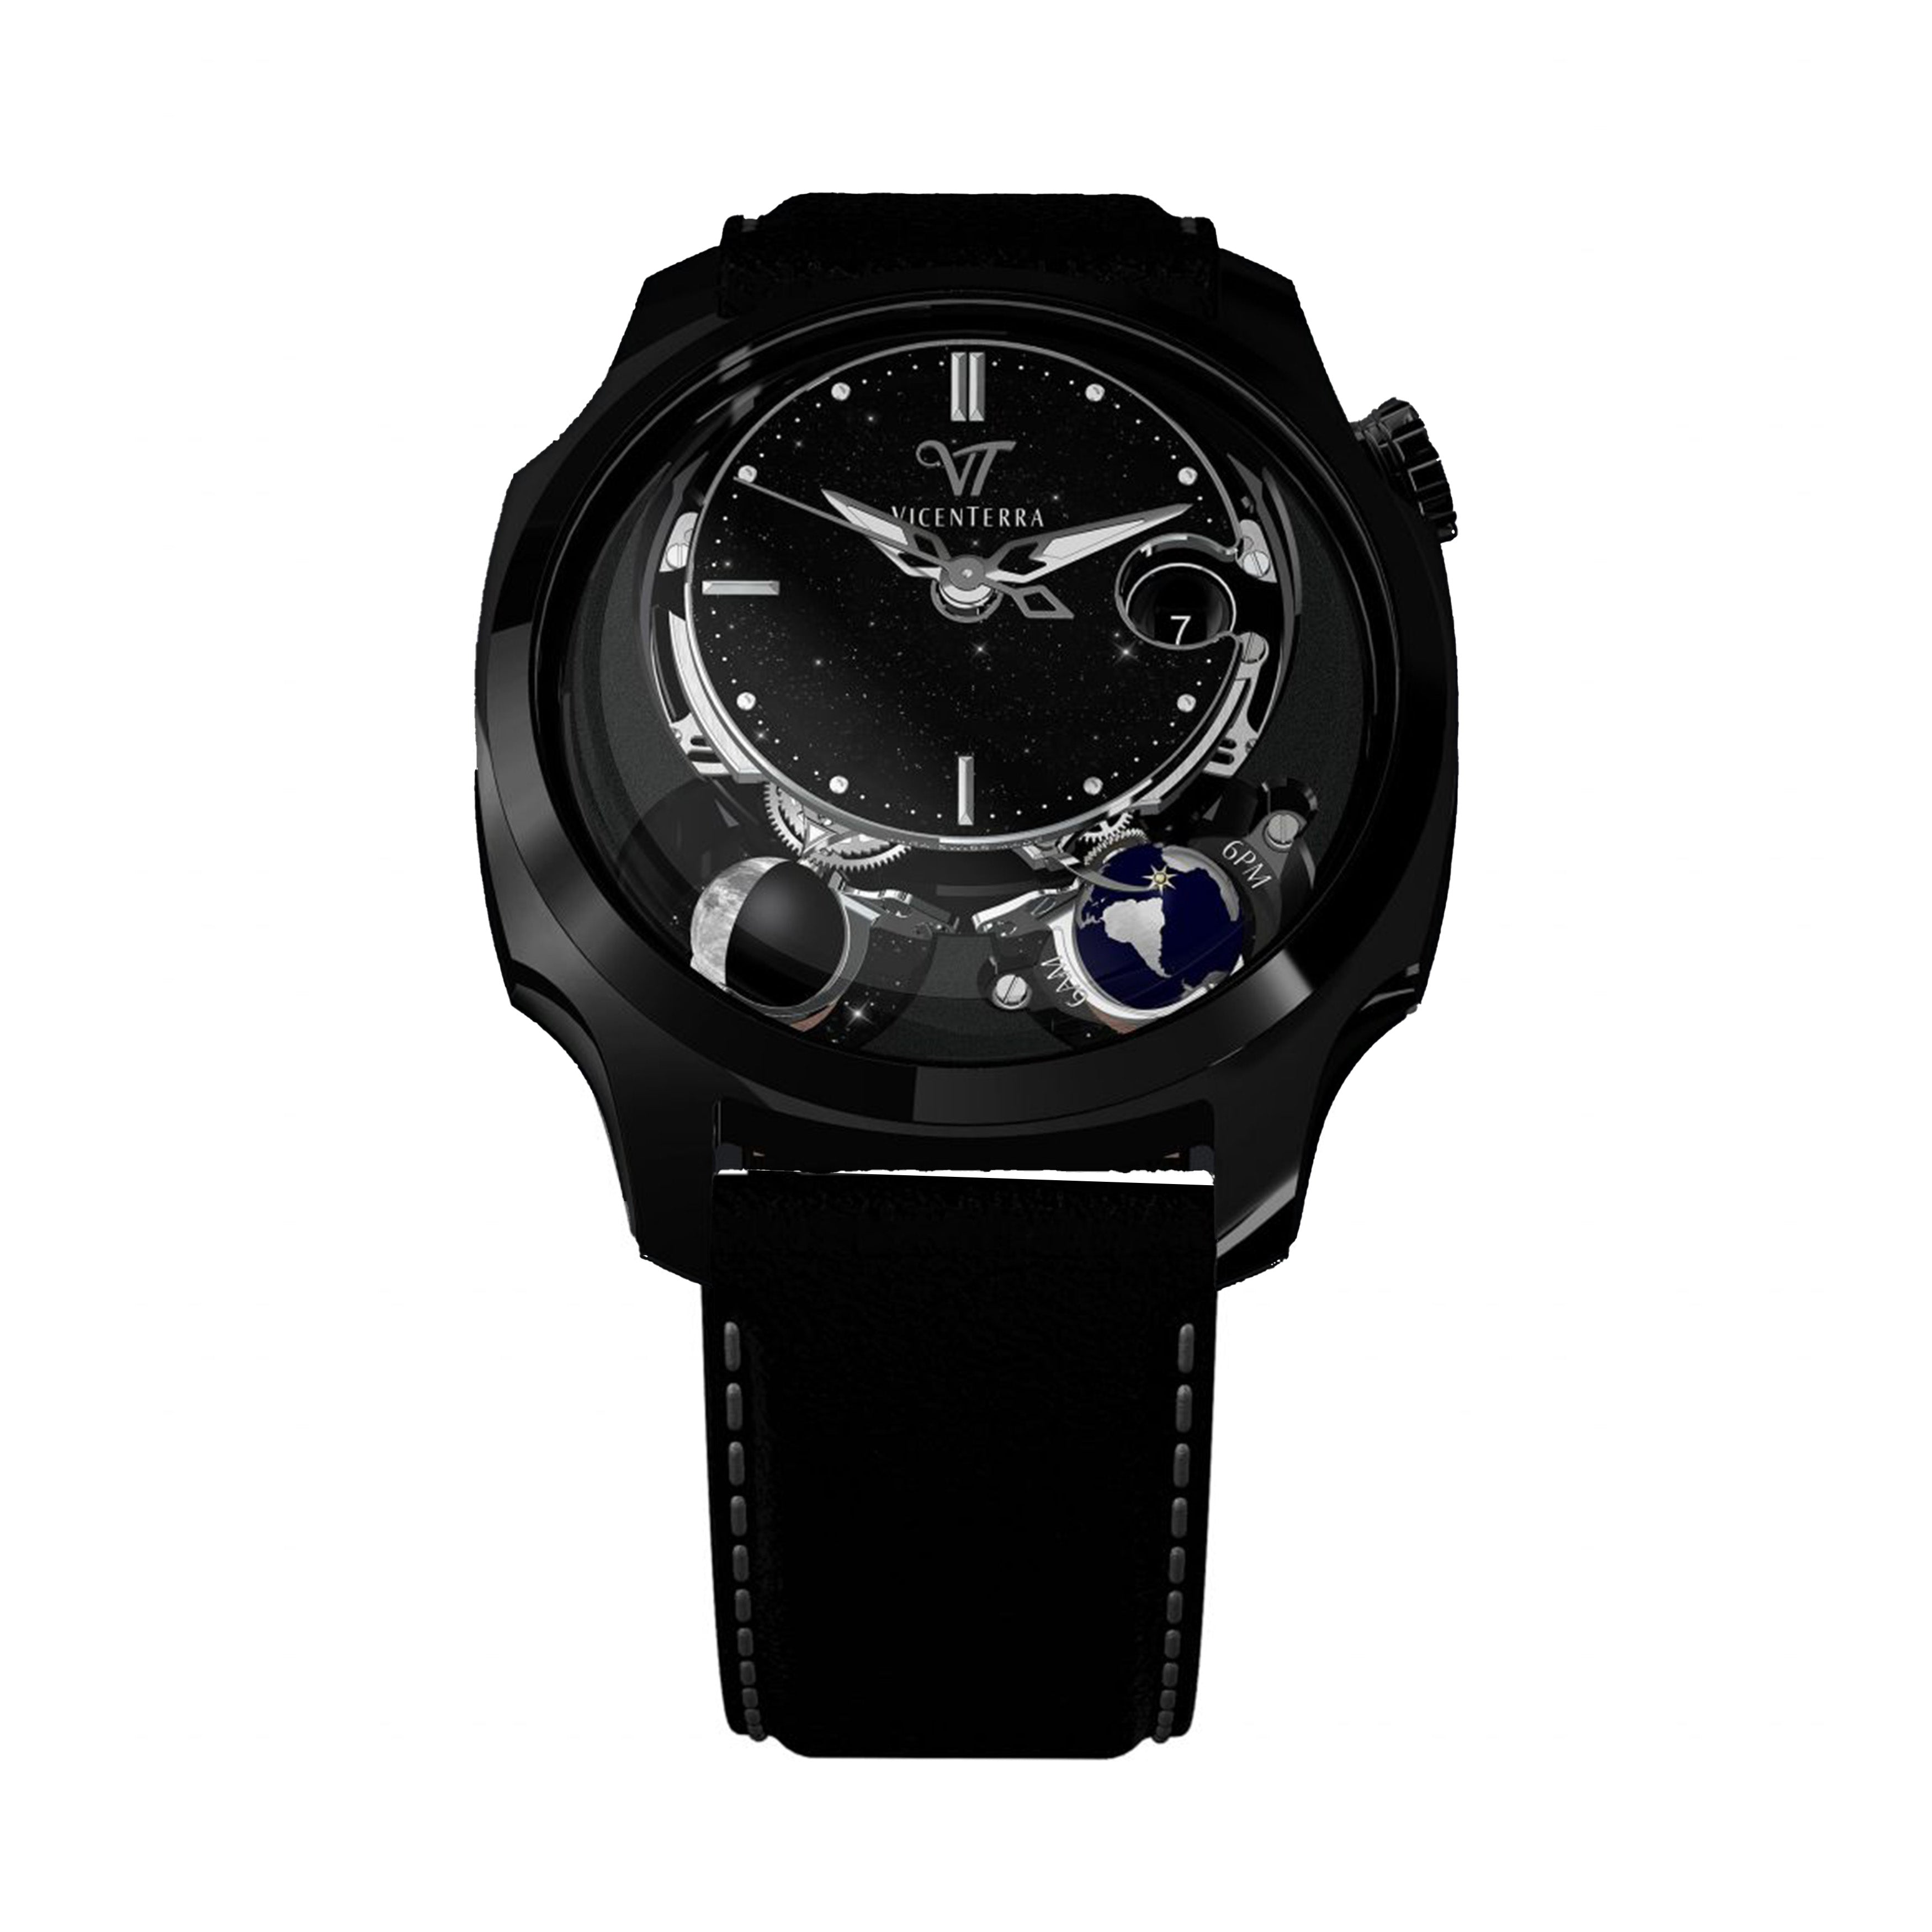 Vicenterra Astroluna T2 Black Aventurine Watch, 41.5mm Black Aventurine Dial, VT.174.01.22